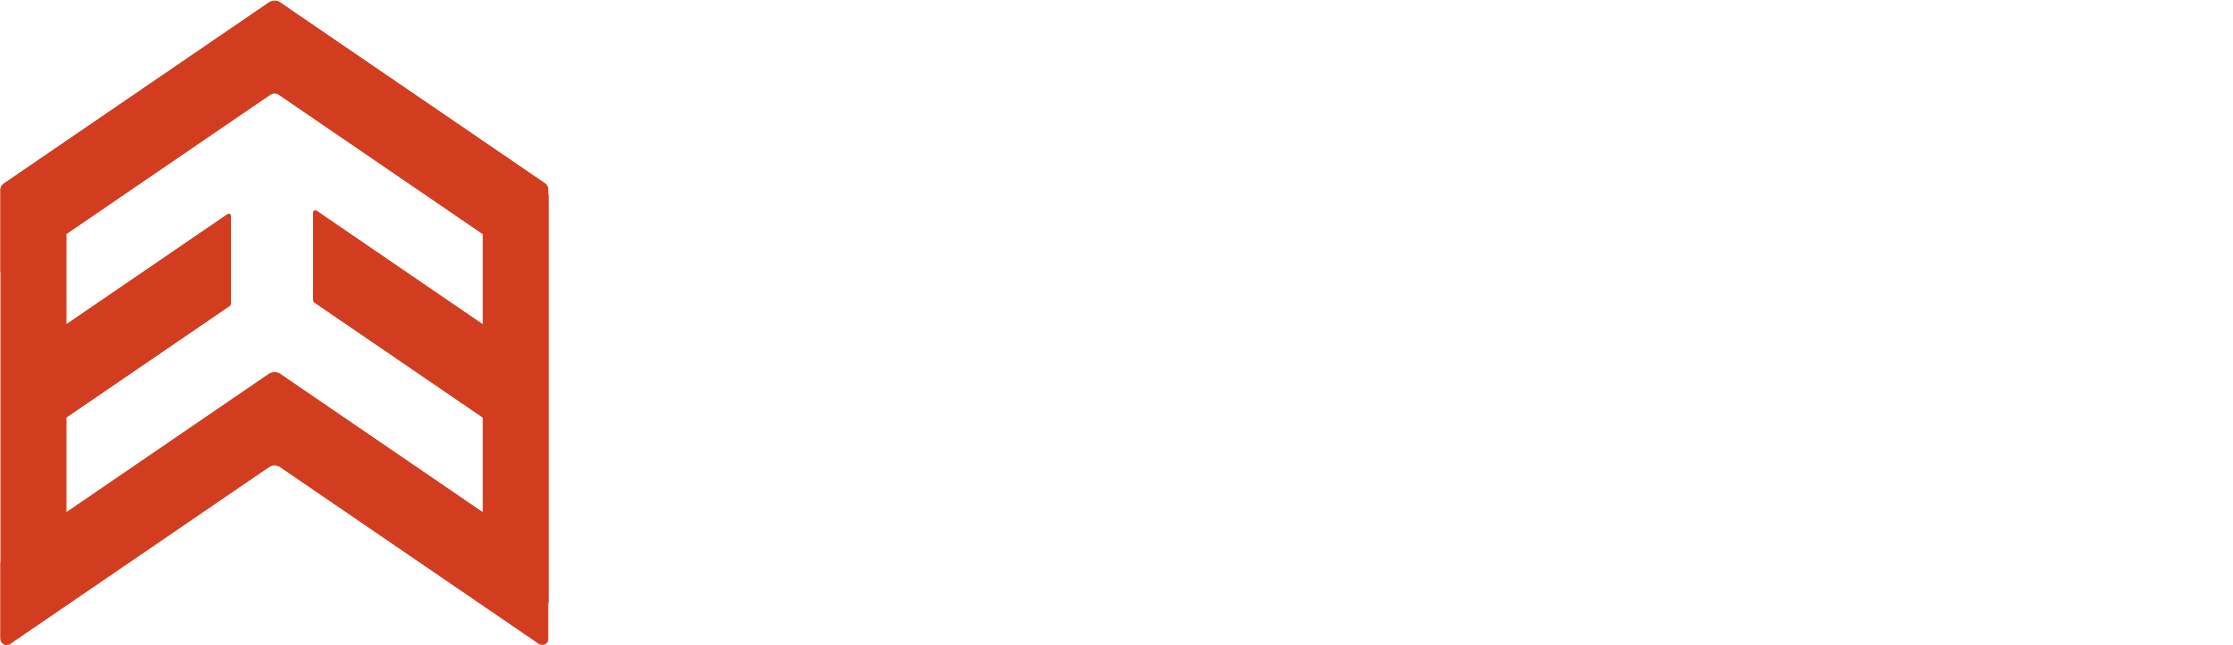 Elevation Design Co.